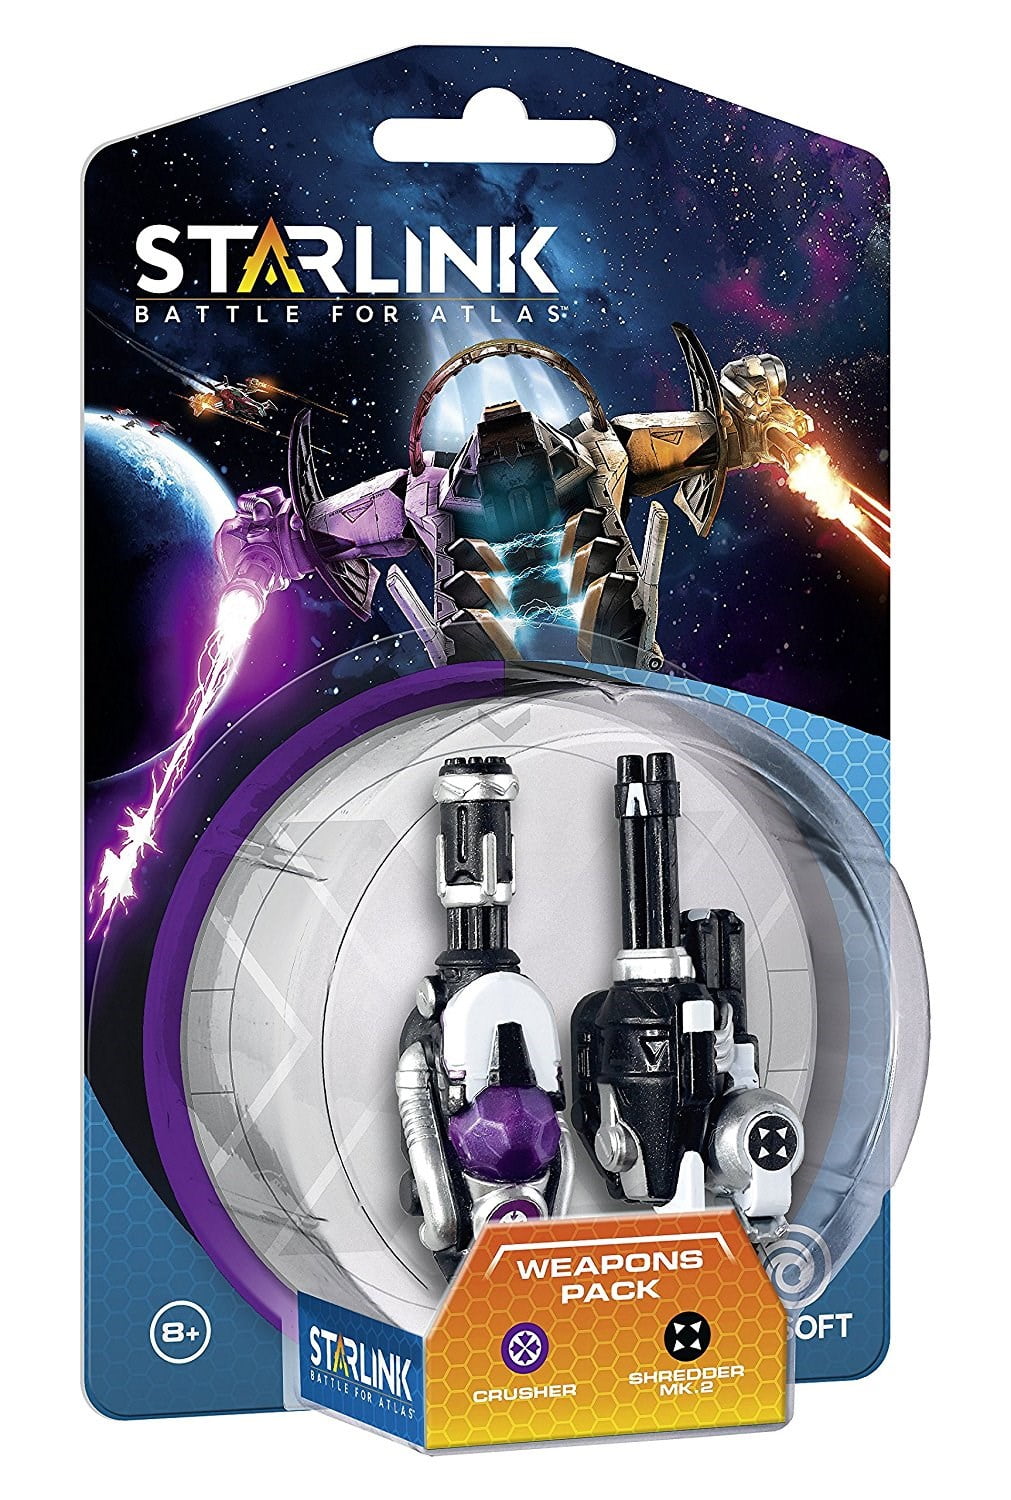 Starlink Weapon Pack: Crusher & Shredder